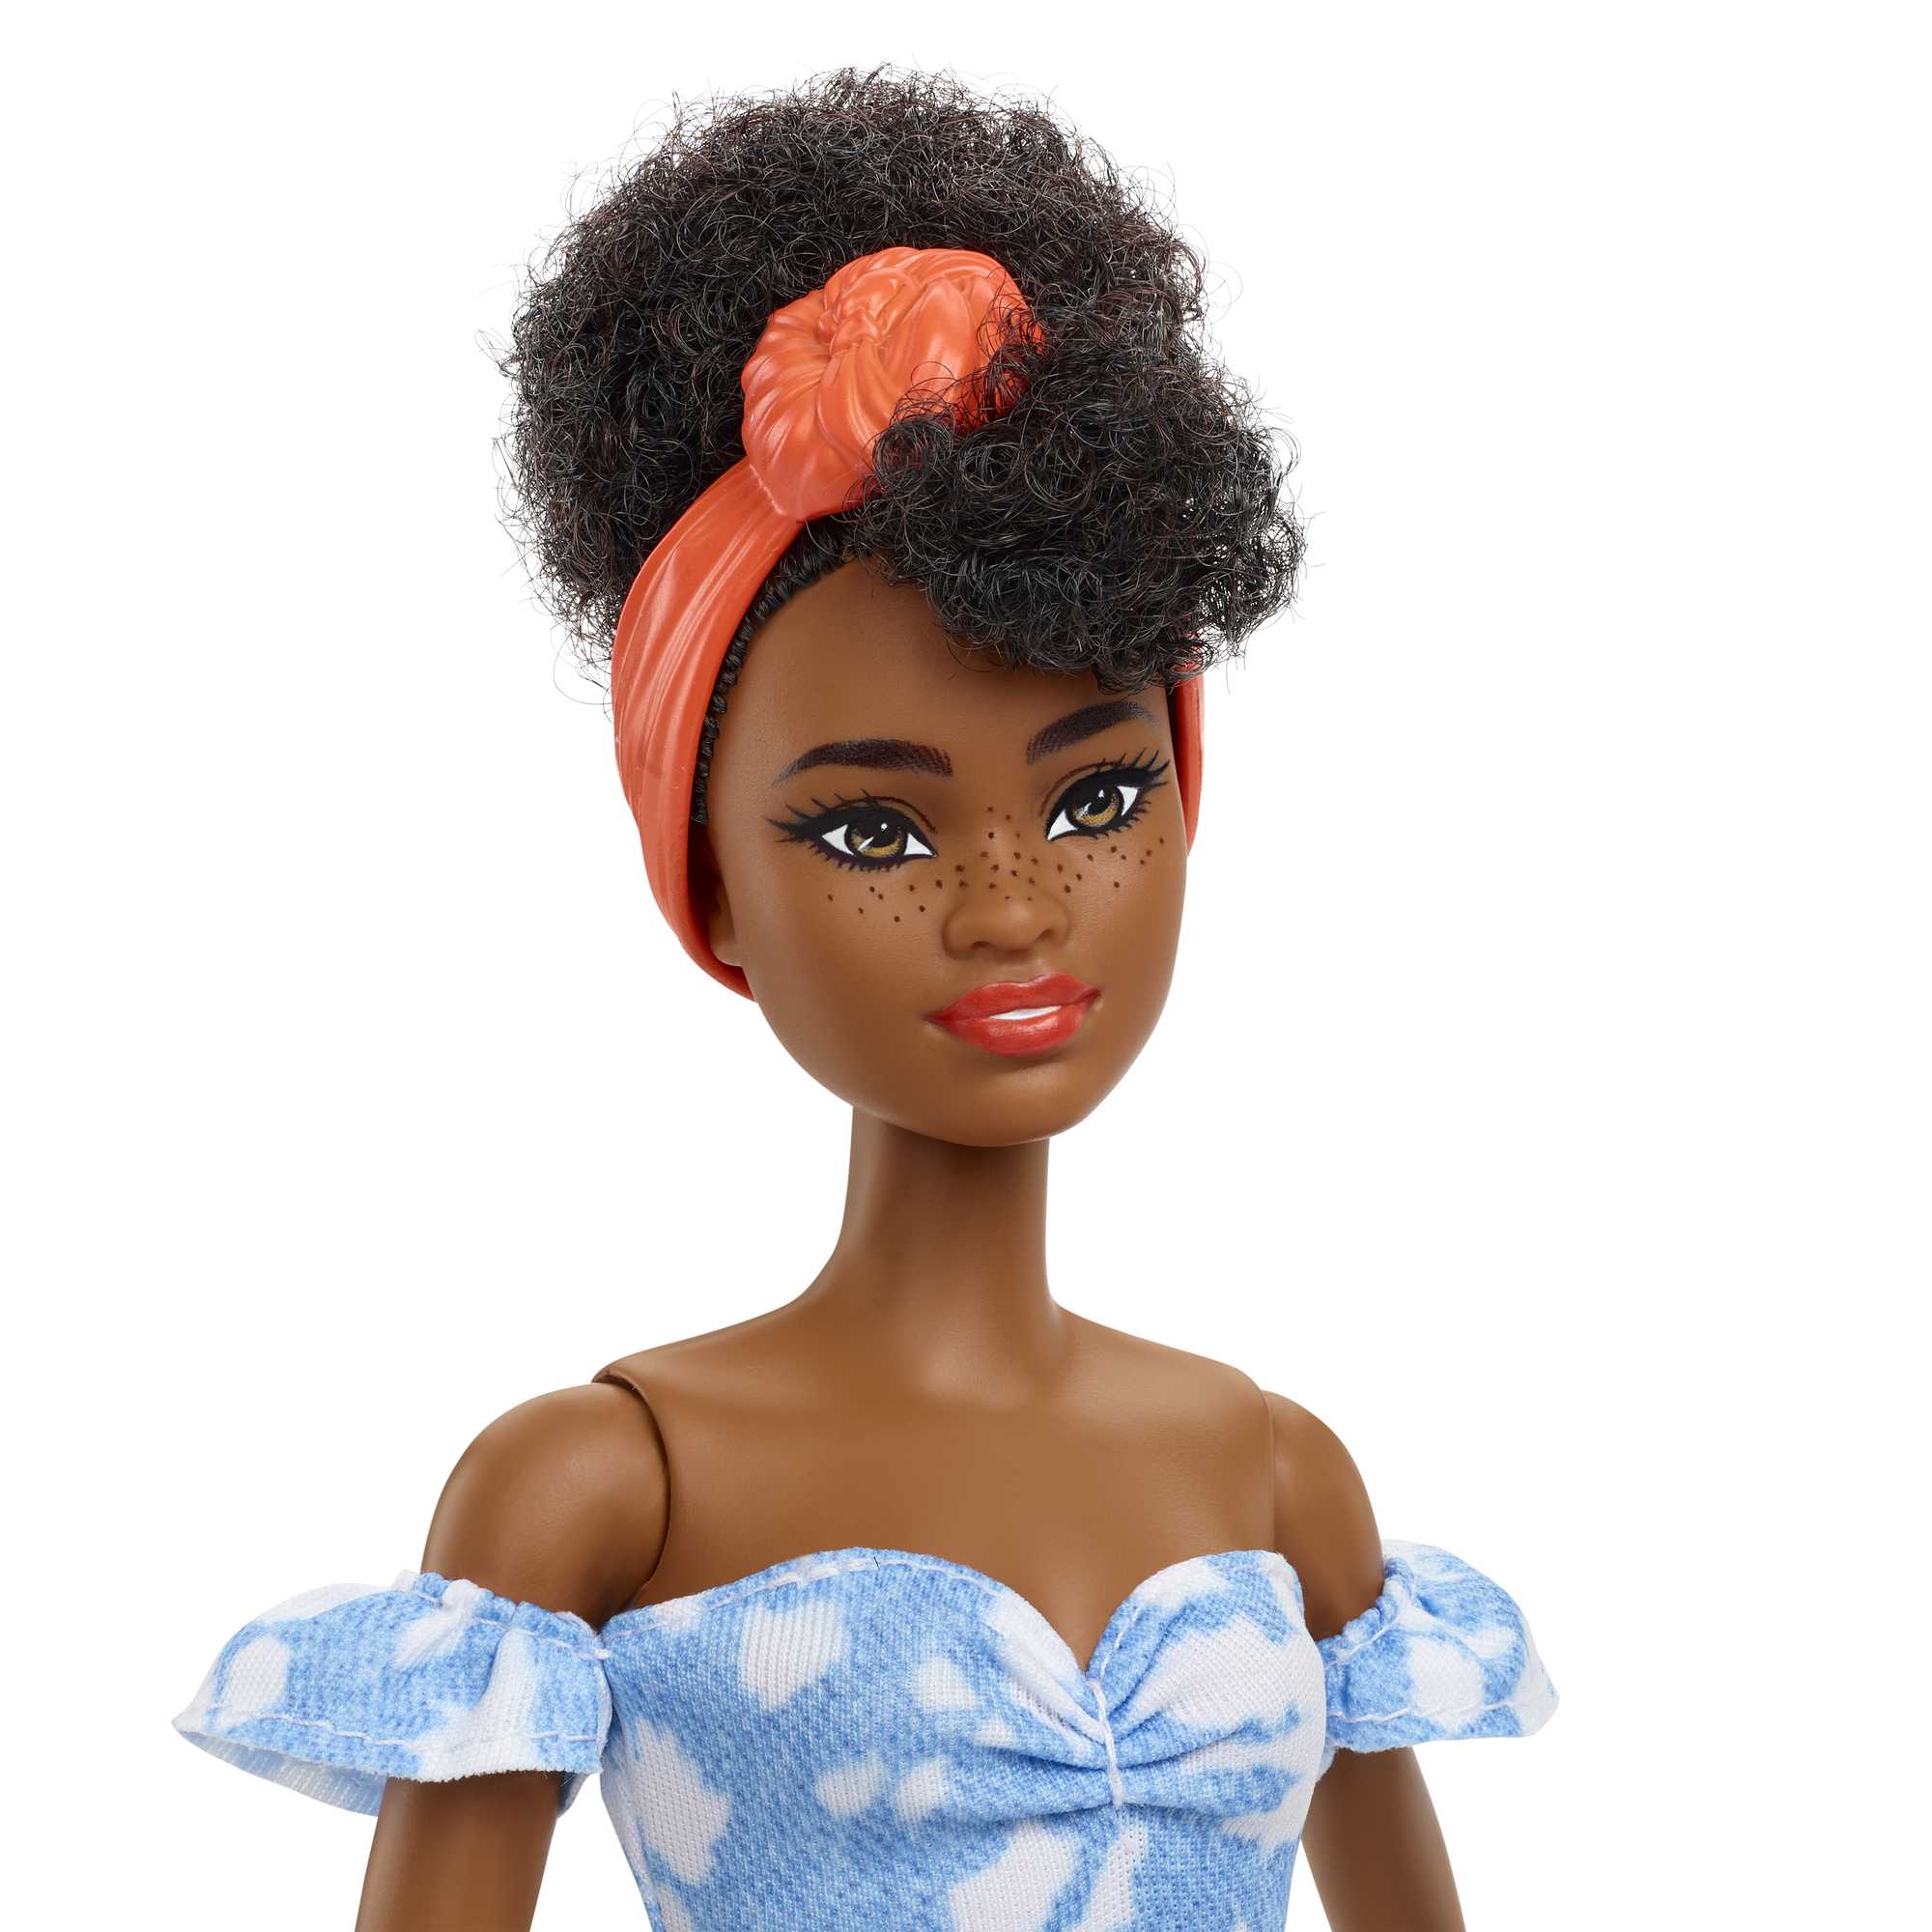 Mattel - Poupée Barbie Fashionistas : Poupée métisse aux cheveux